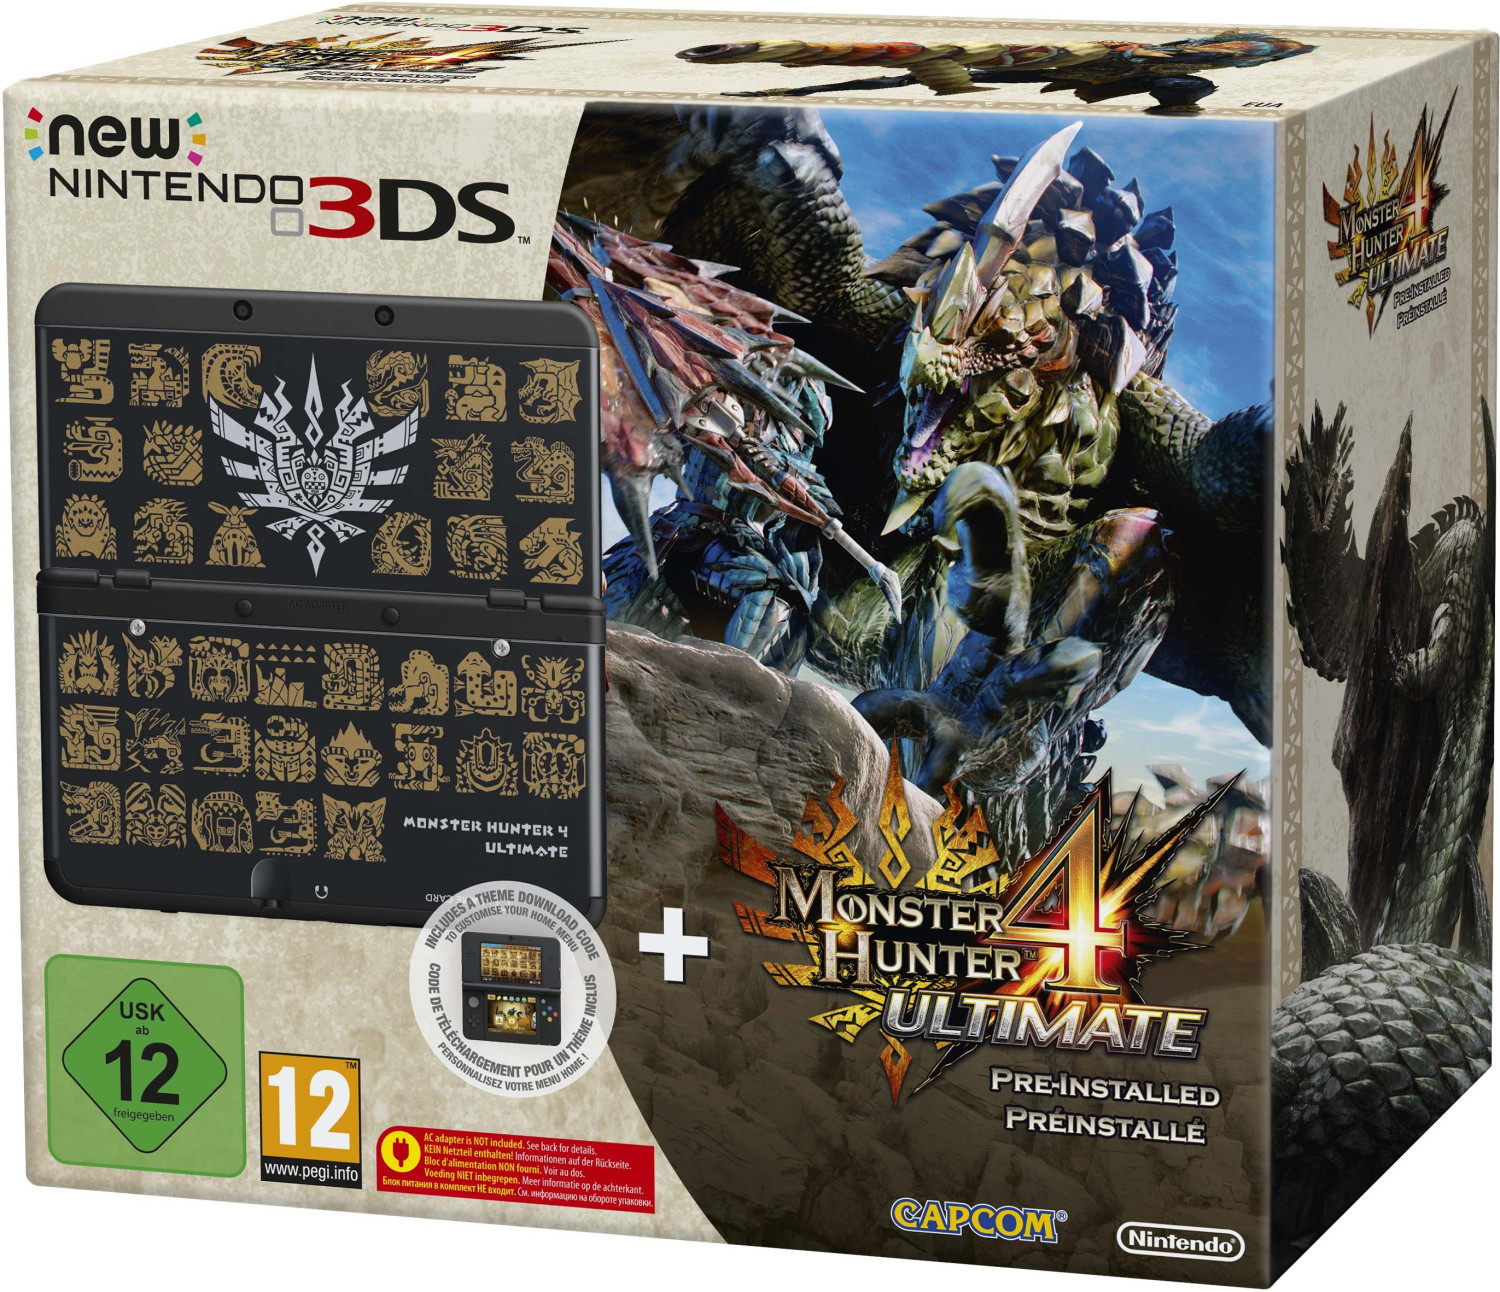 Nintendo New 3DS + Monster Hunter 4 Ultimate Pack